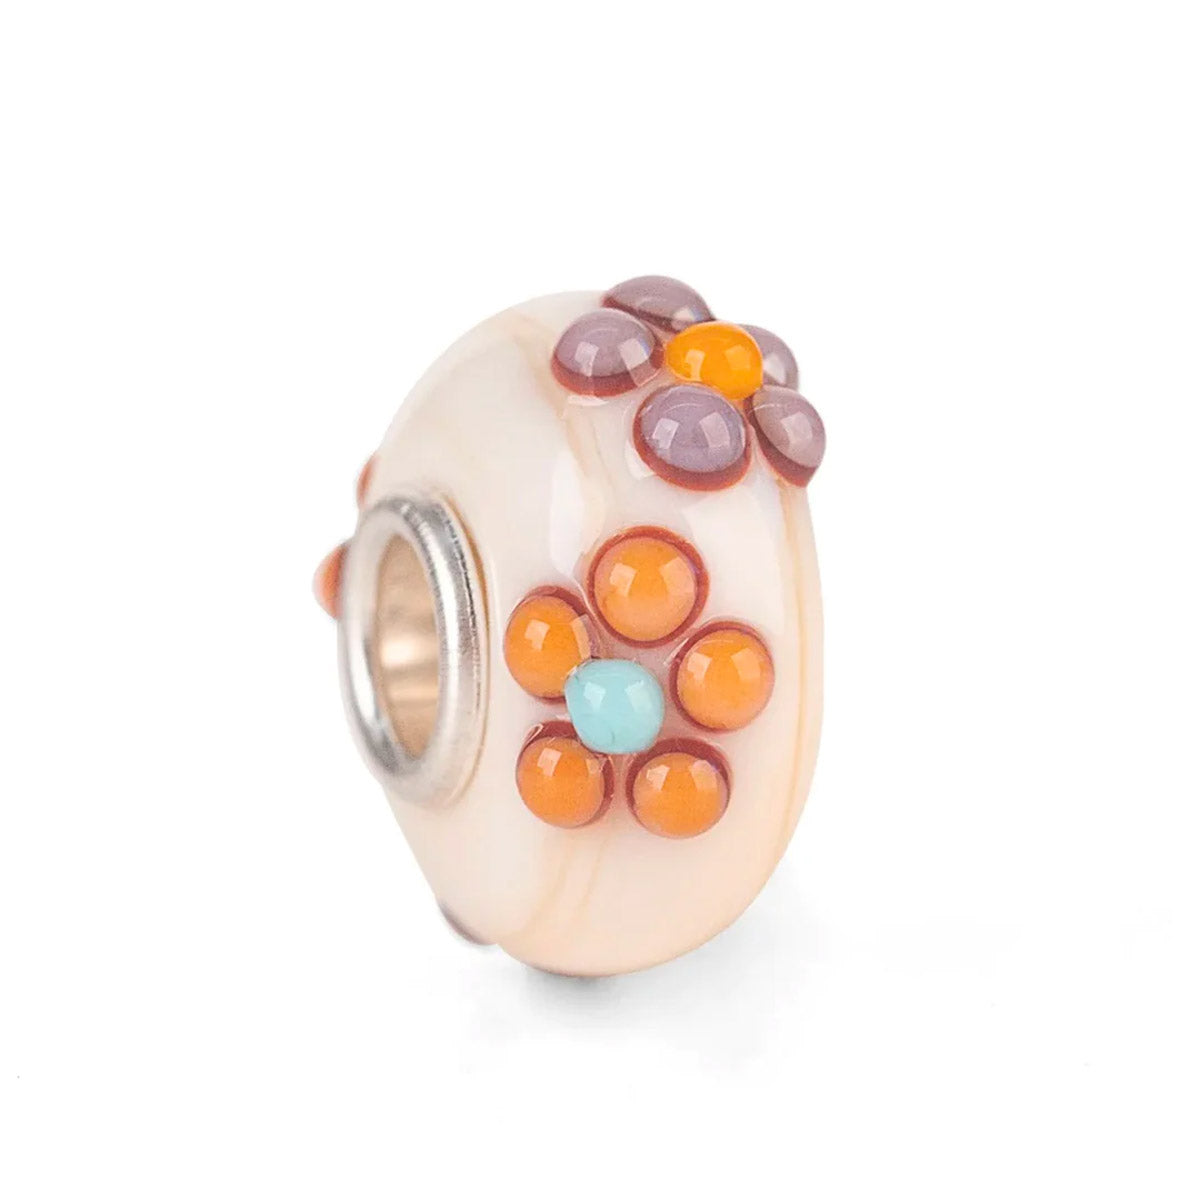 Bouquet Bianco THUN by Trollbeads | Beads in vetro beige e bianco con fiorellini in rilievo di colore arancione e viola | TGLBE-20141